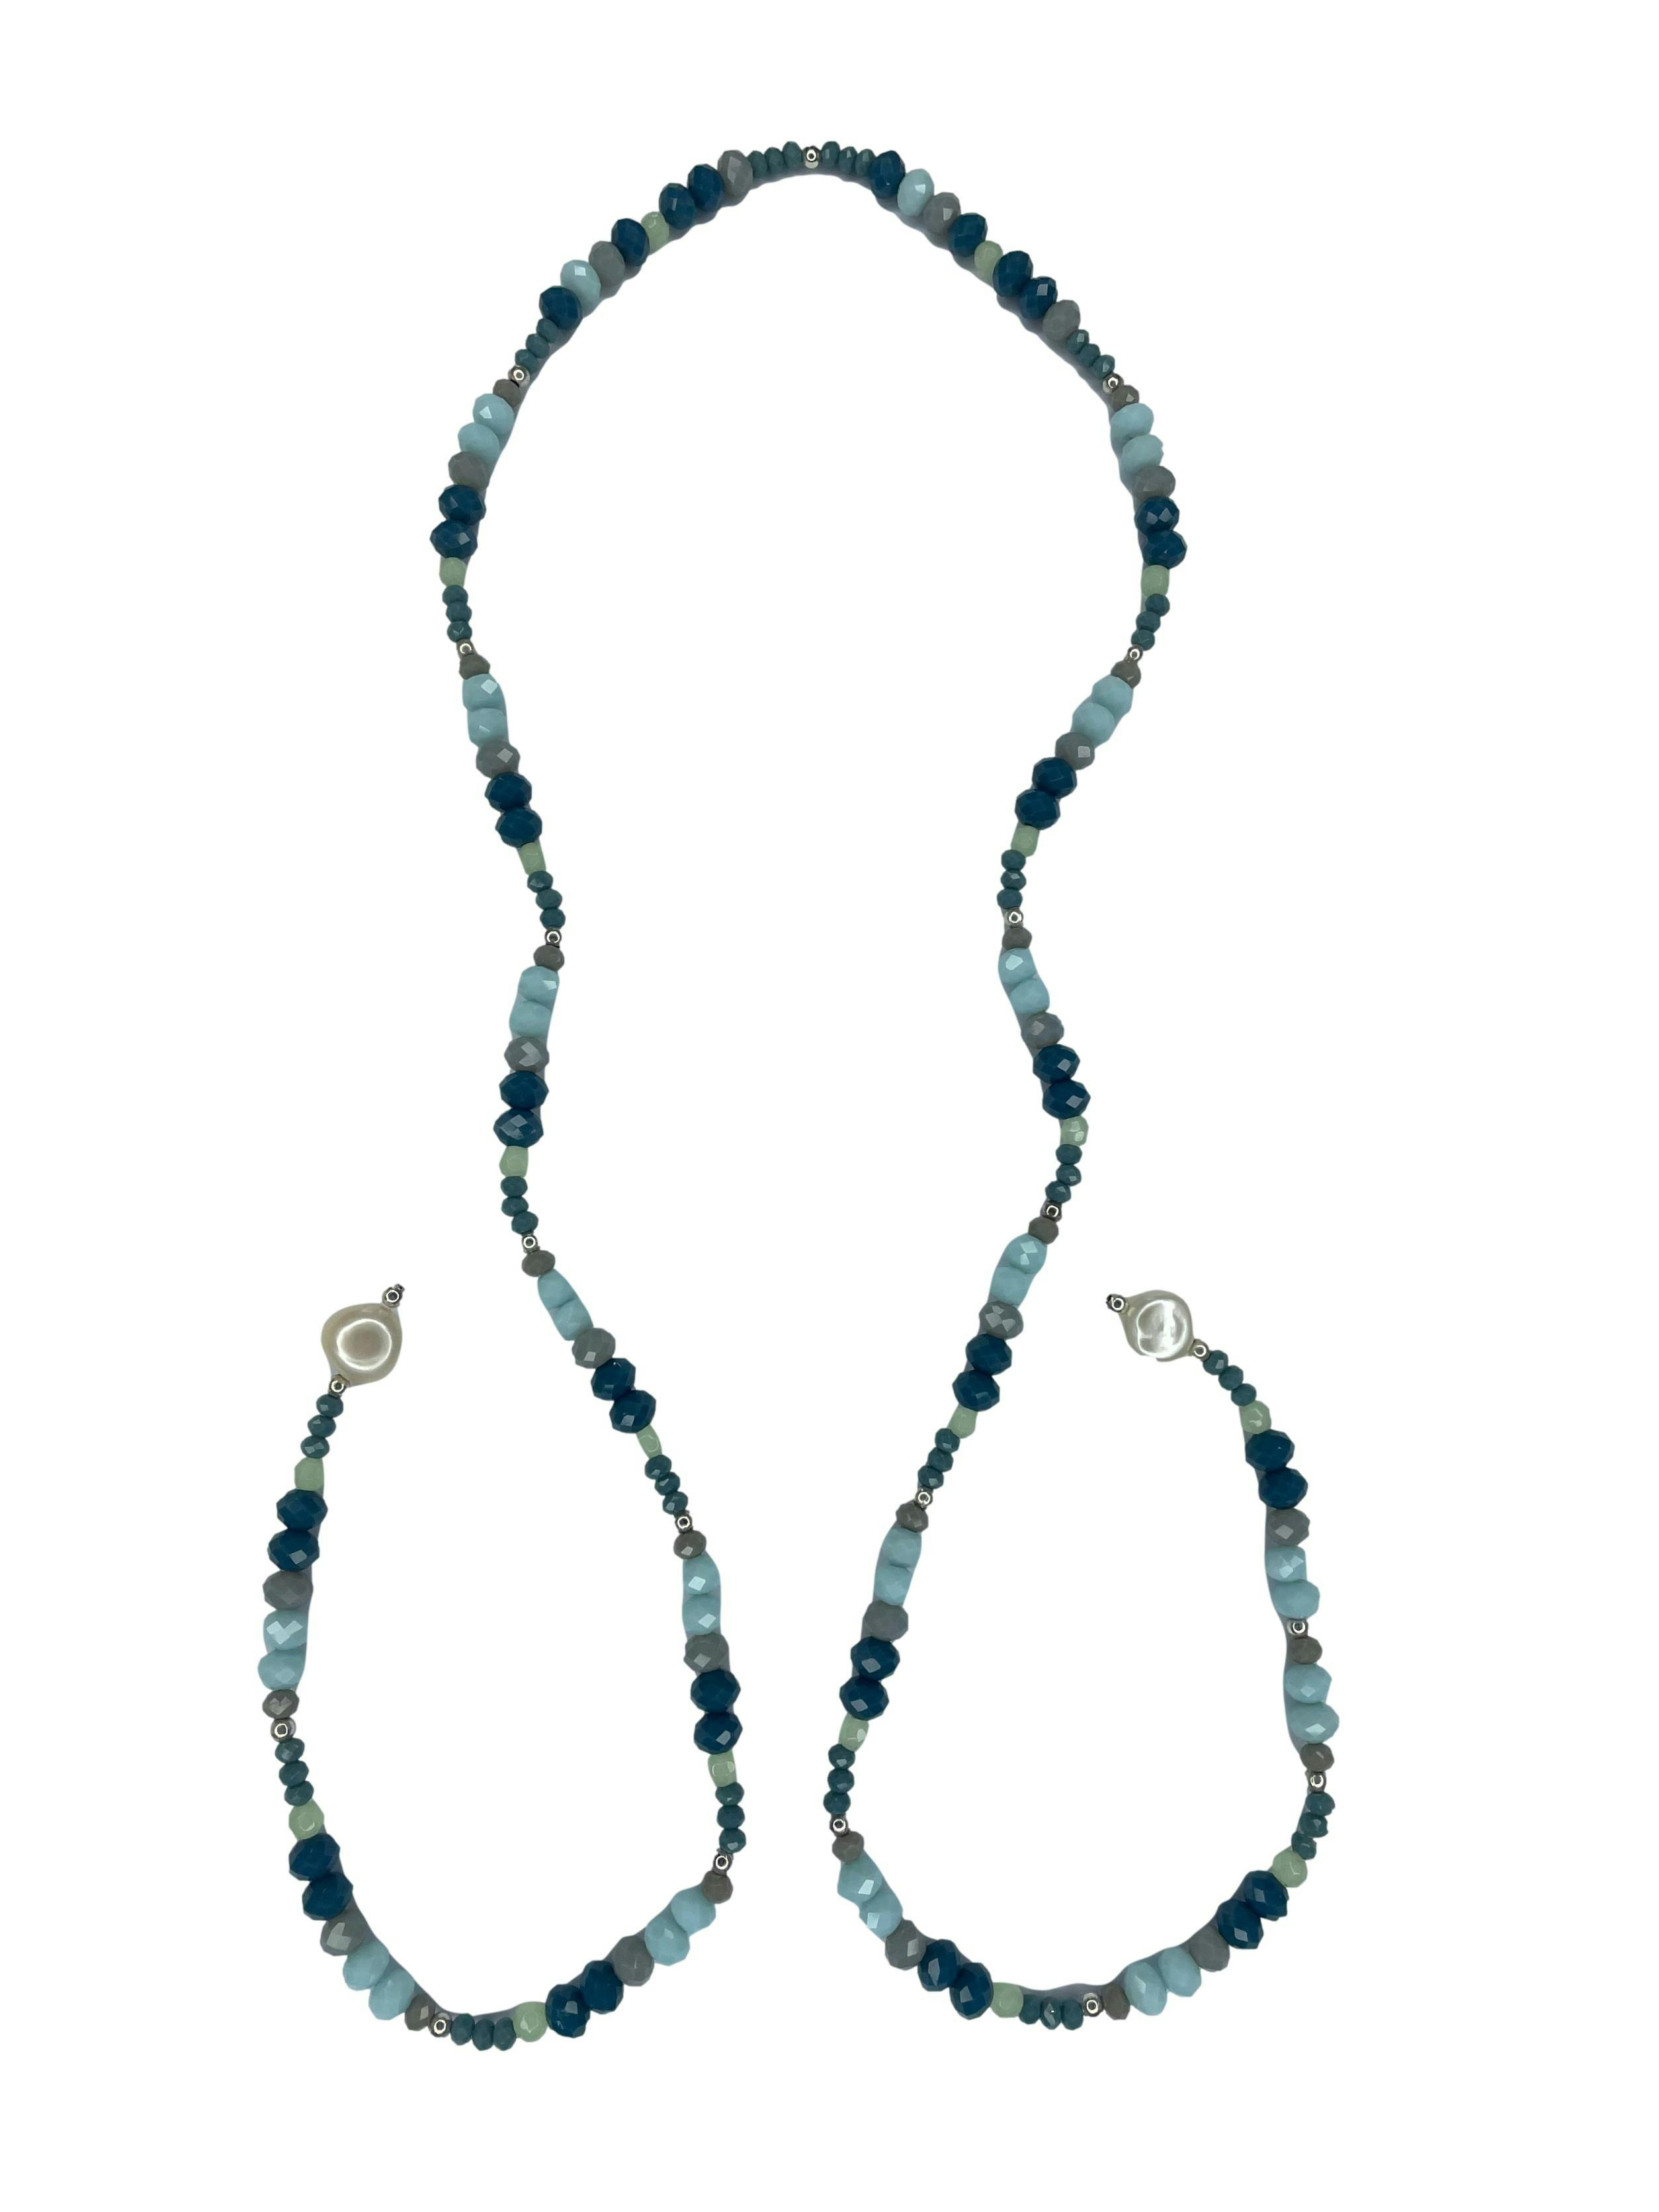 Collar envolvente de acrílicos en tonos azules y perlas en extremos. Largo 80cm